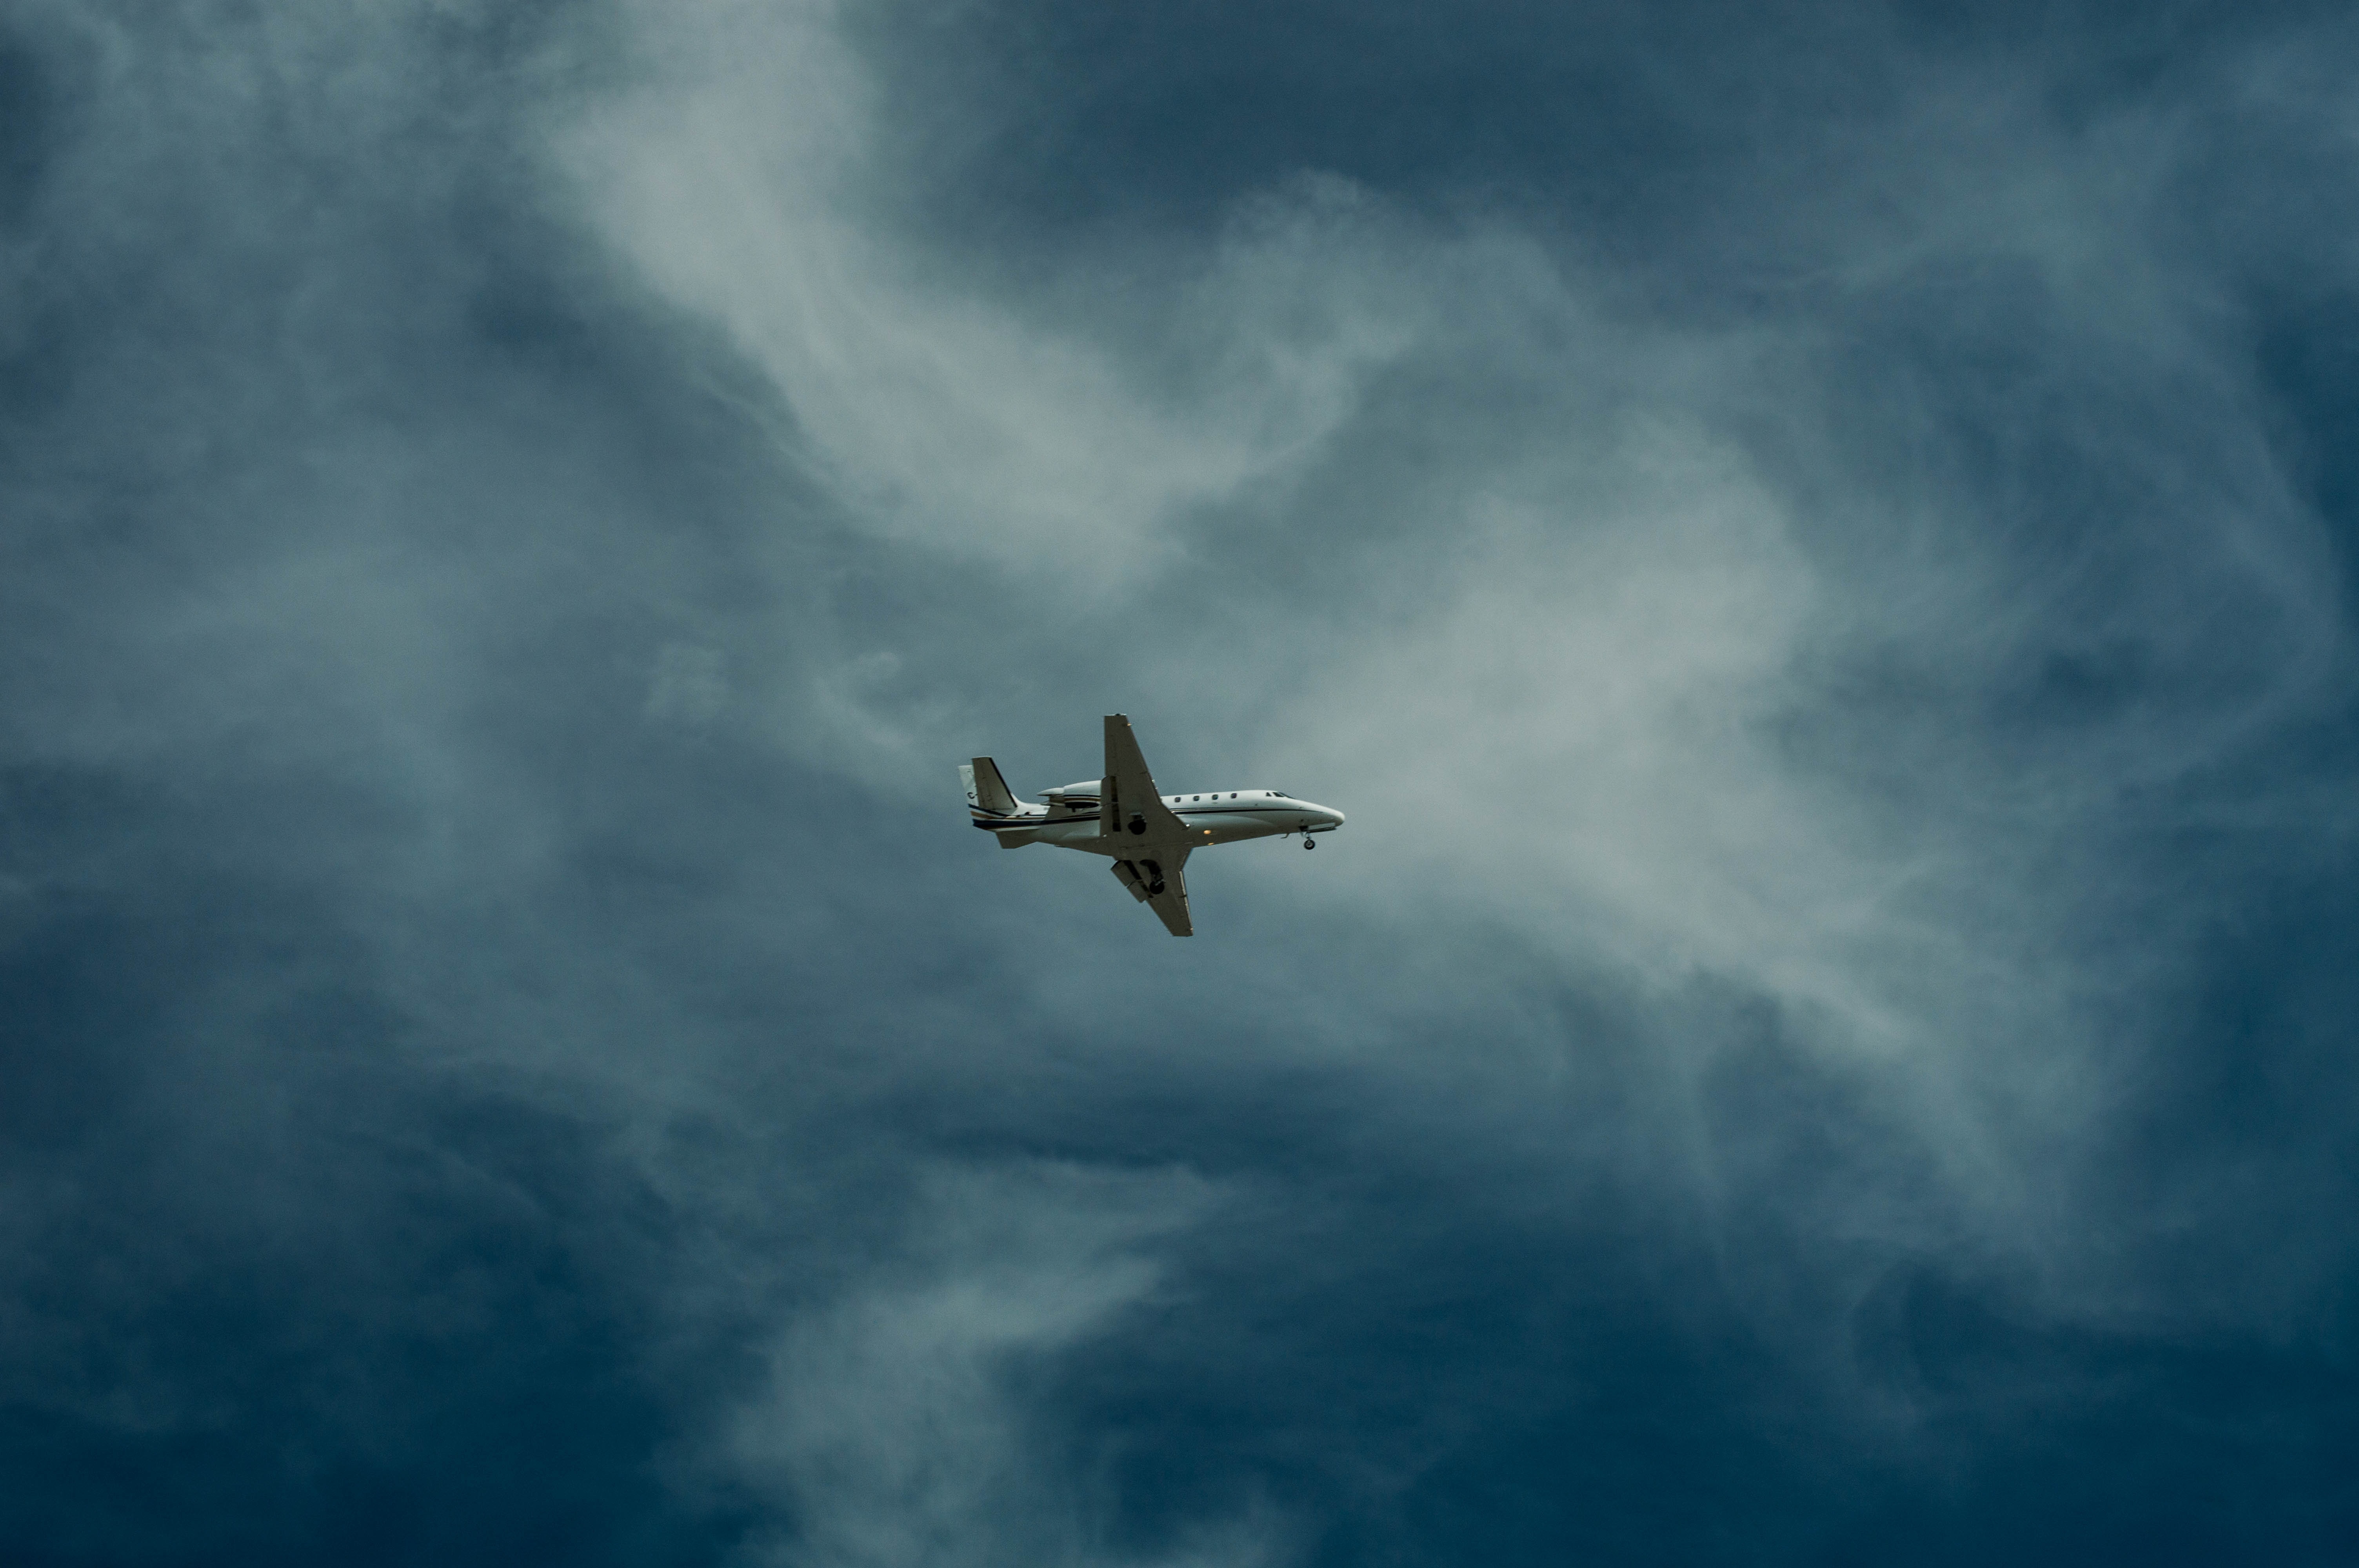 Самолет находящийся в полете преодолевает 140 метров. Самолет в небе. Cfvjktn DF yt,t. Обои самолет. Cfvjk`n d uyt,r.